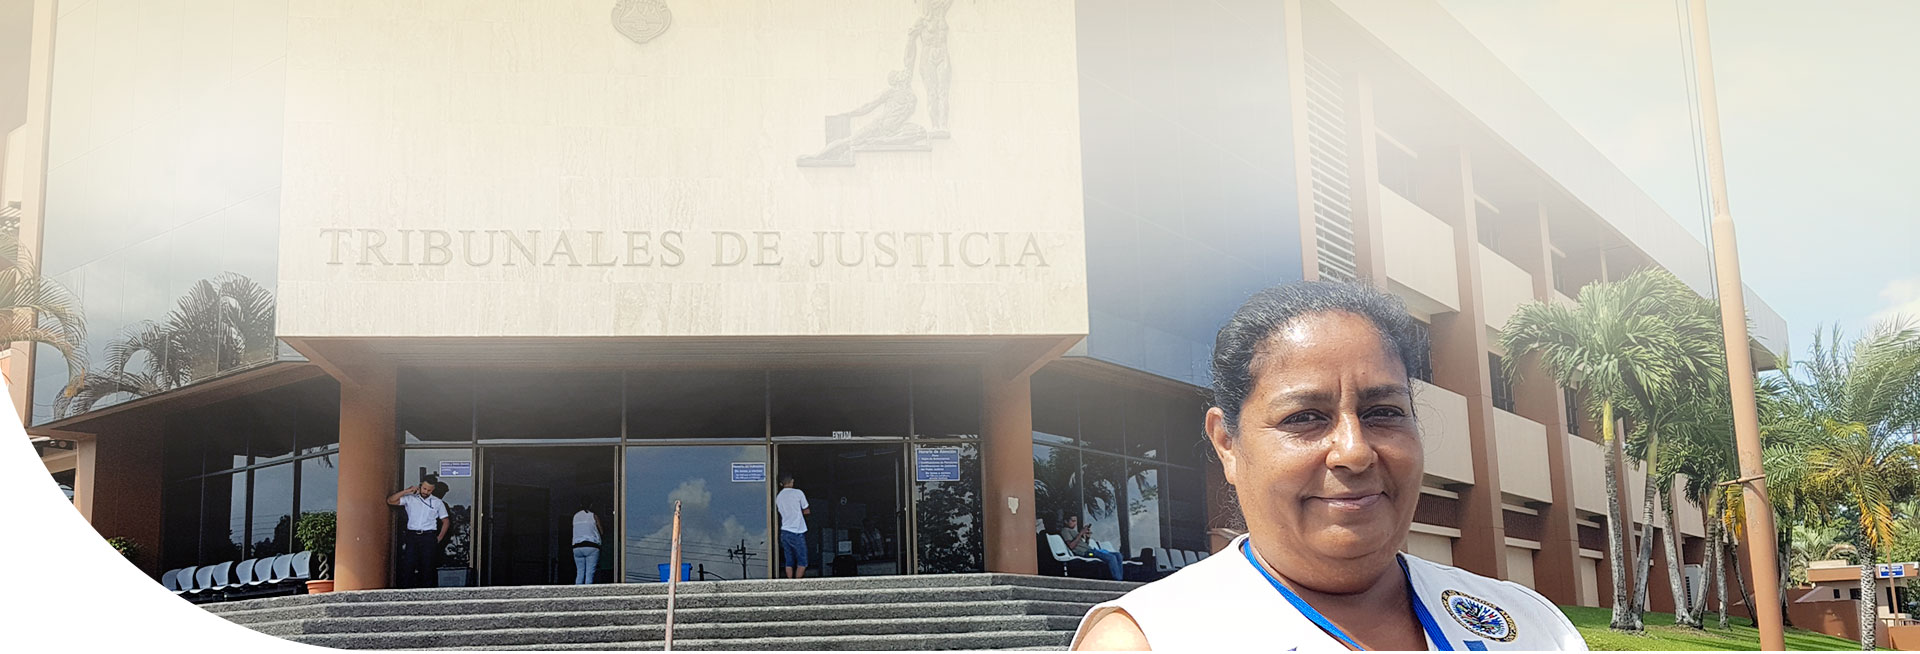 Facilitadora judicial posando en las afueras de los Tribunales de Justicia